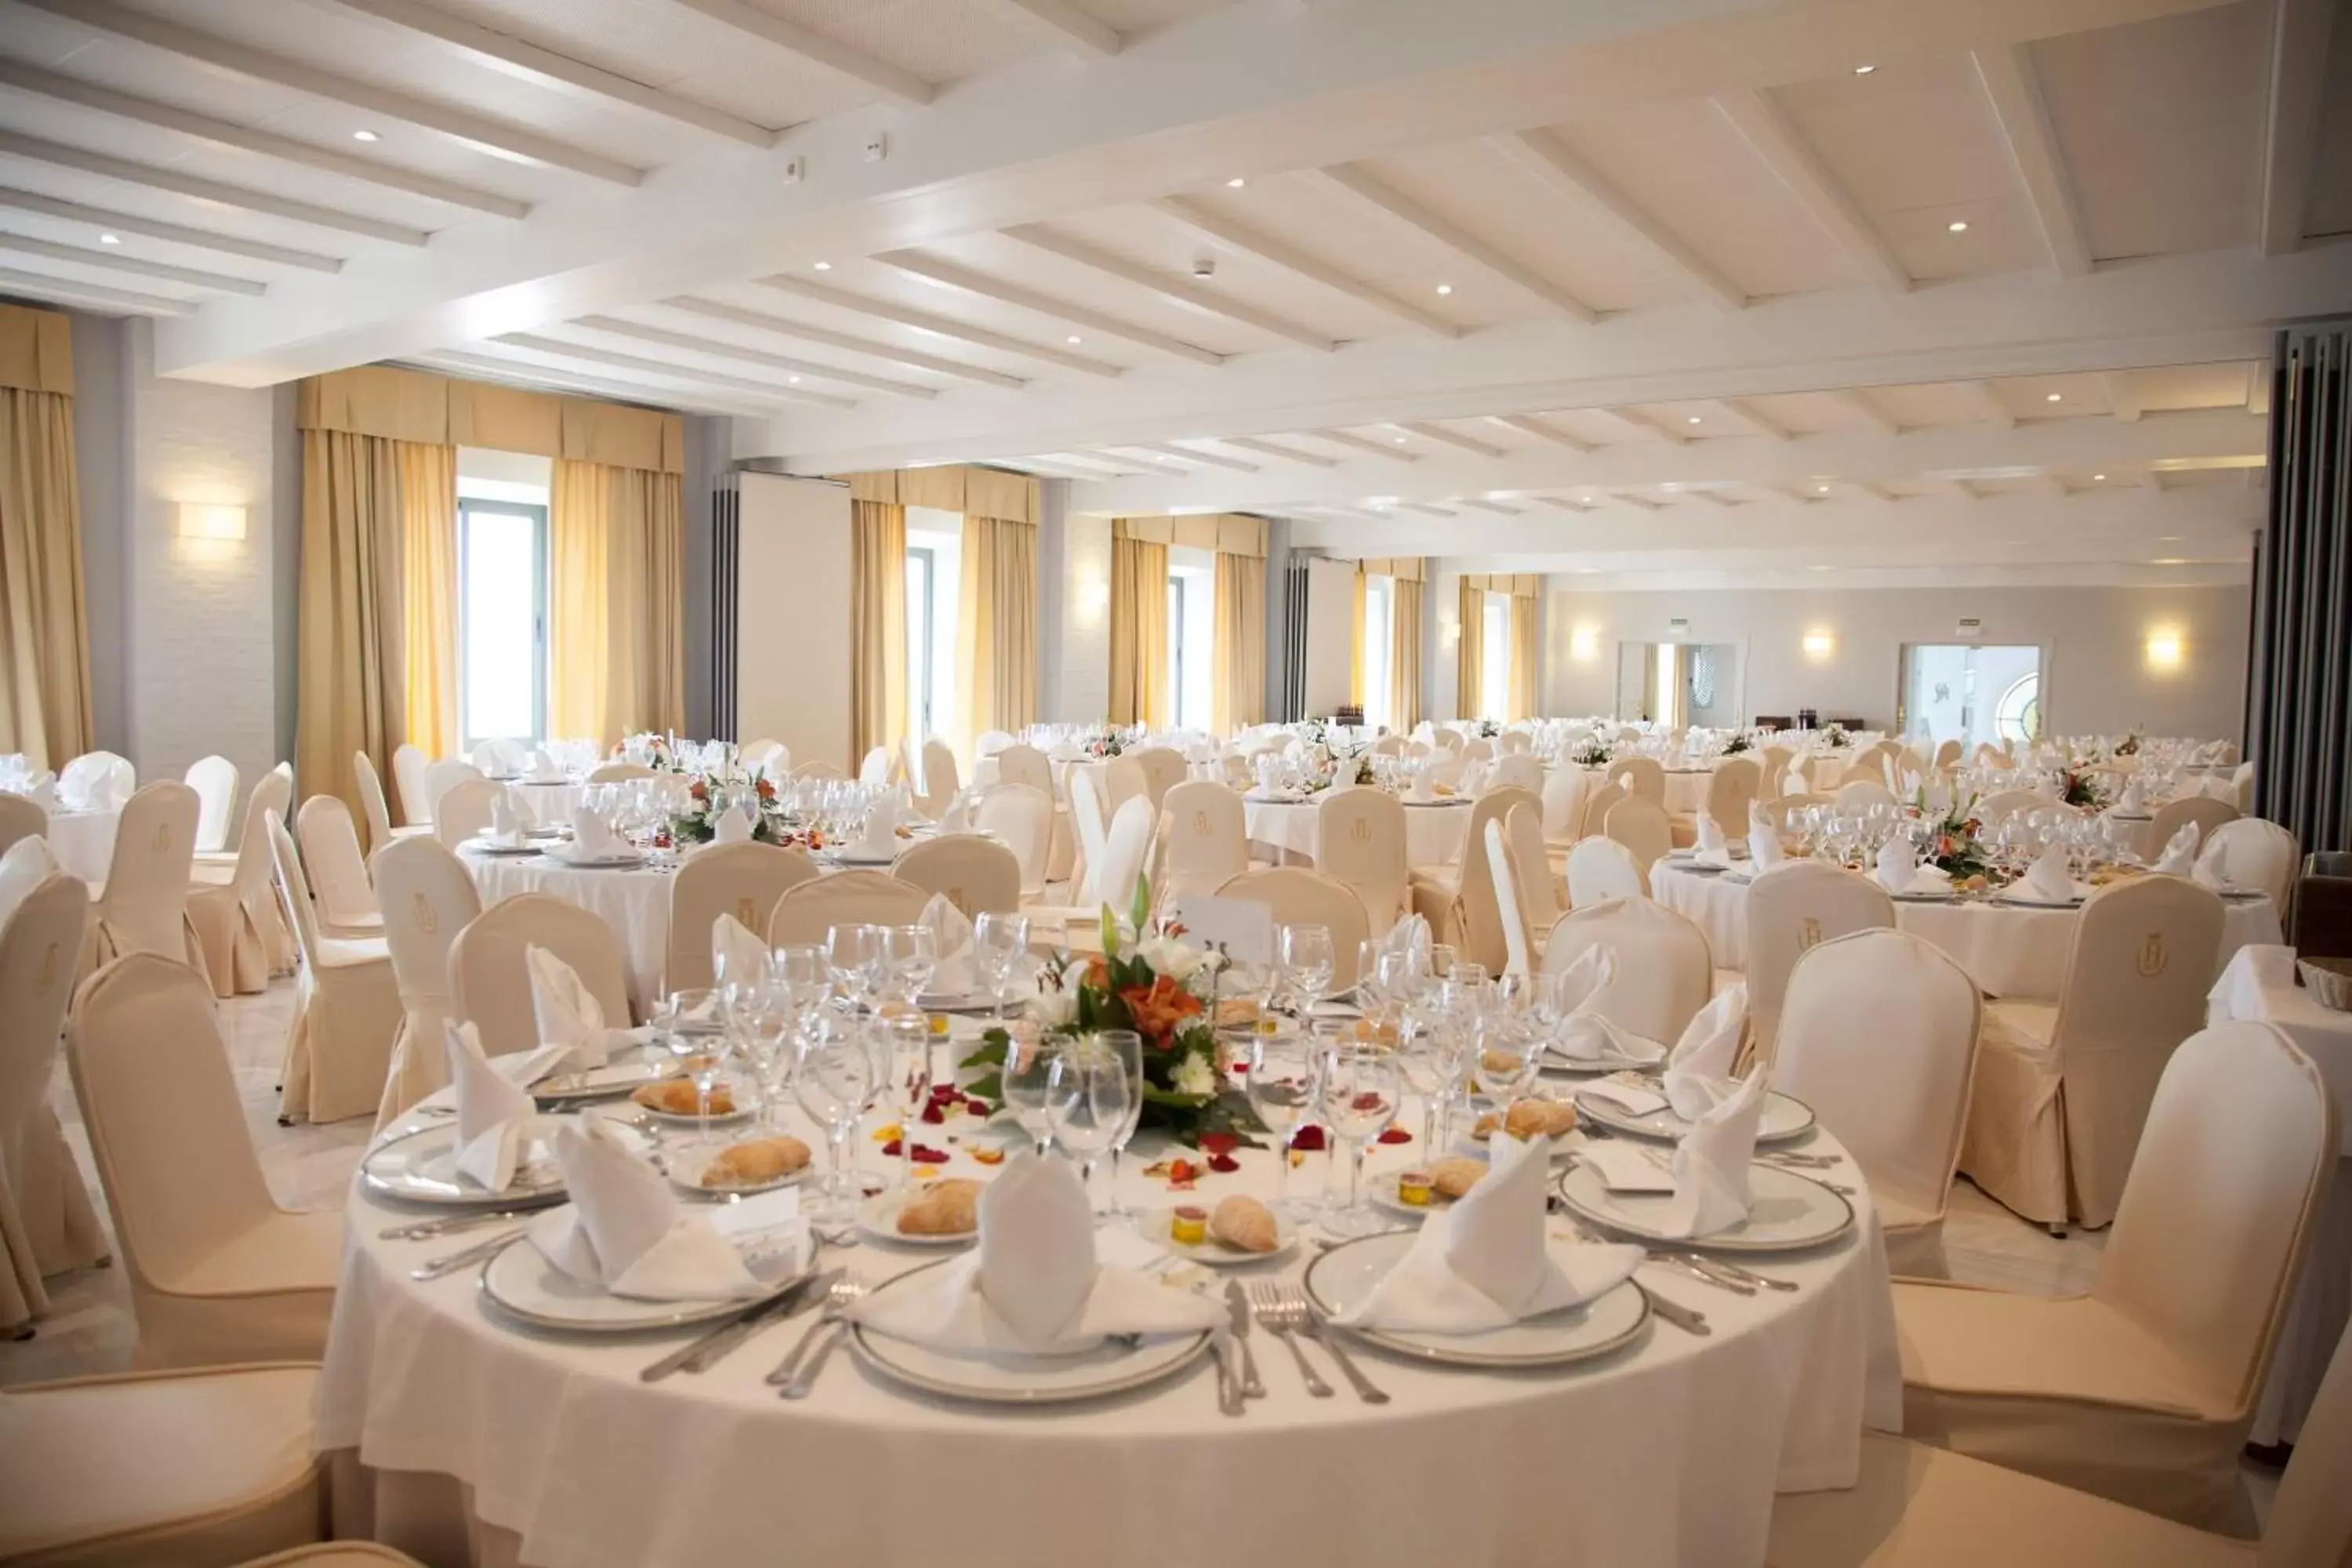 Banquet/Function facilities, Banquet Facilities in Playa de la Luz